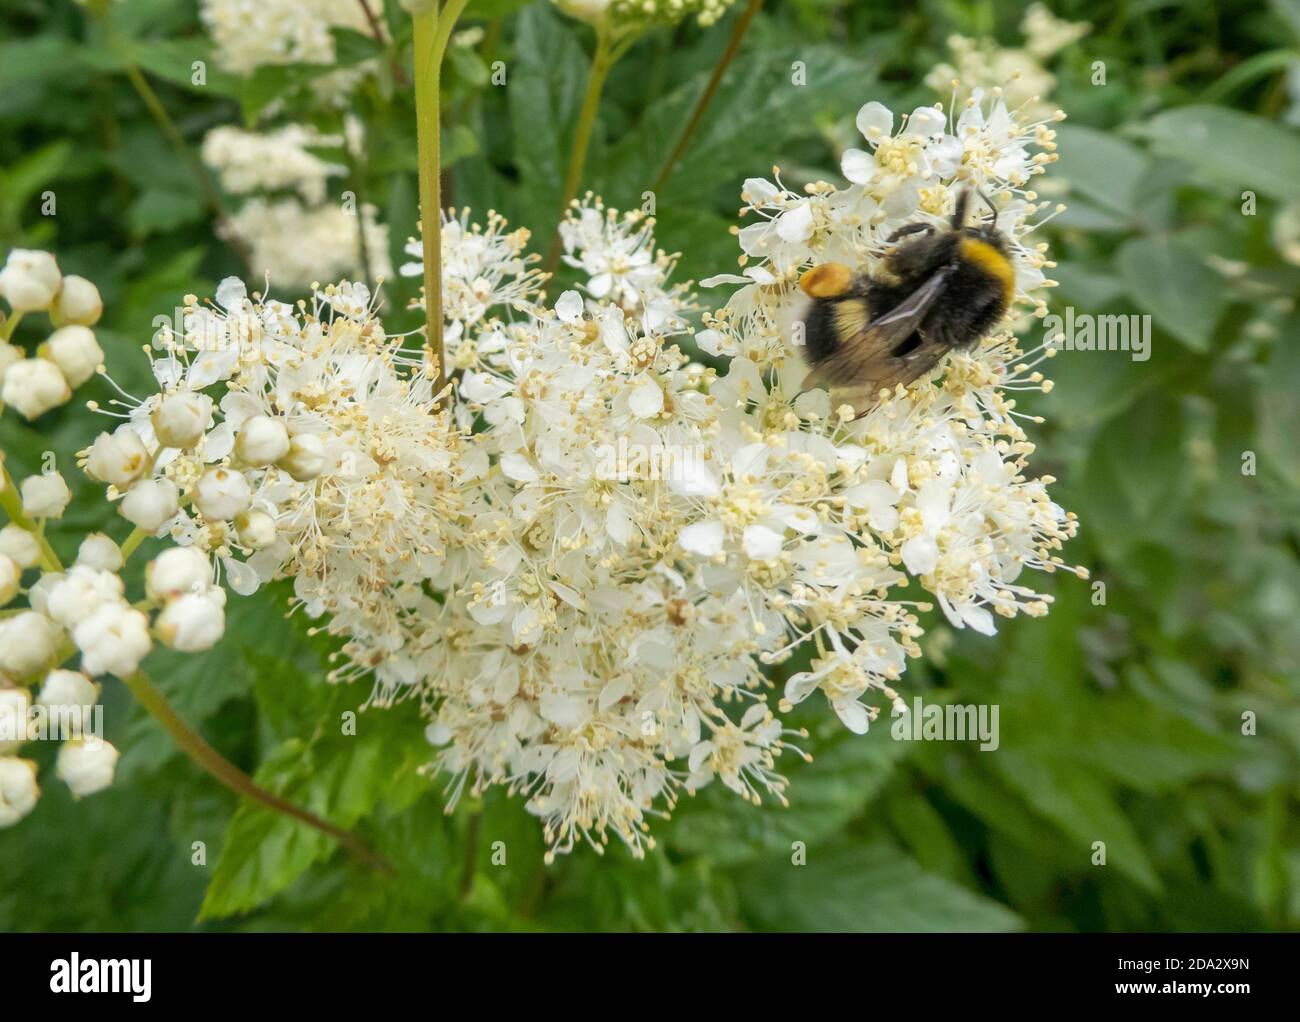 Bomble (Bombus terrestris), Bumblebee scuro e Real Sweet, Norvegia, Troms Foto Stock